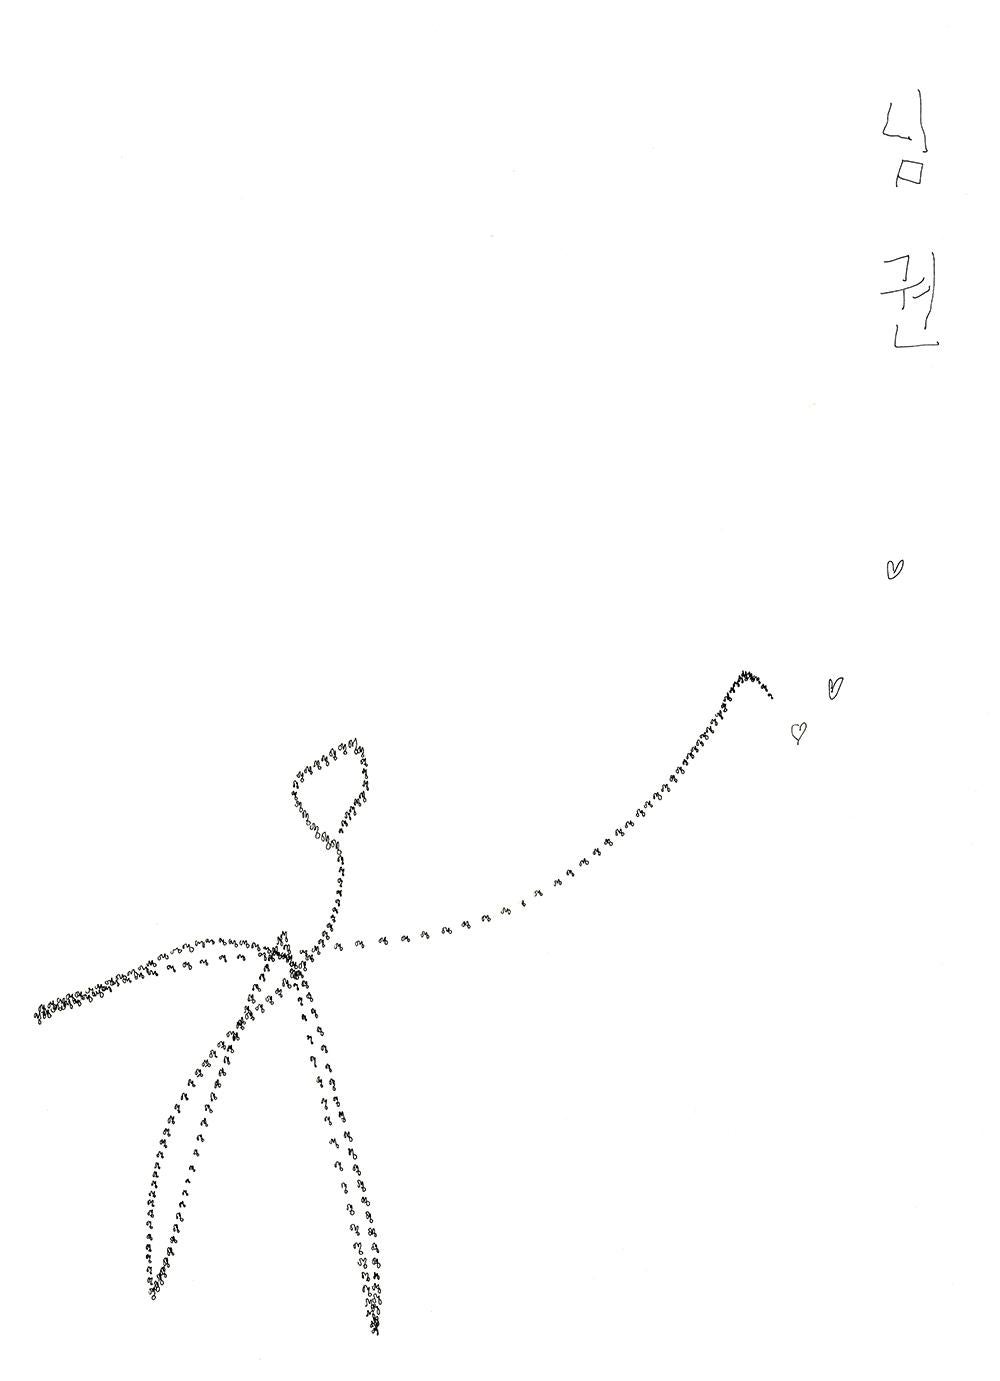  Seung Ho Yoo Abstract Drawing - NIM KWON (Lover martial art)